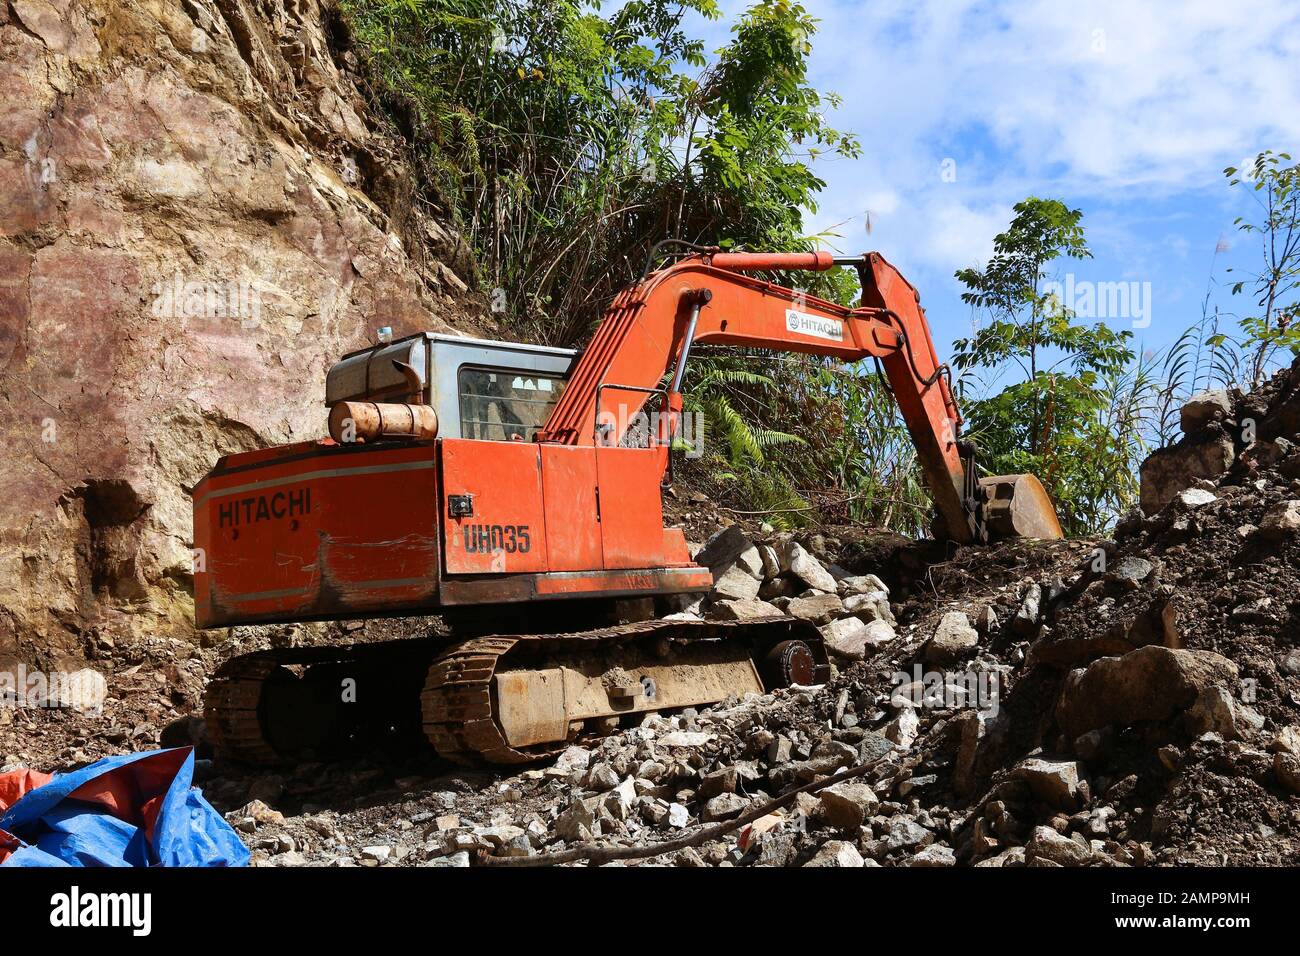 Batad, FILIPINAS - 27 DE NOVIEMBRE de 2017: Antigua excavadora Hitachi que realiza trabajos de limpieza de bloques de carreteras de roca en Batad, Filipinas. Foto de stock